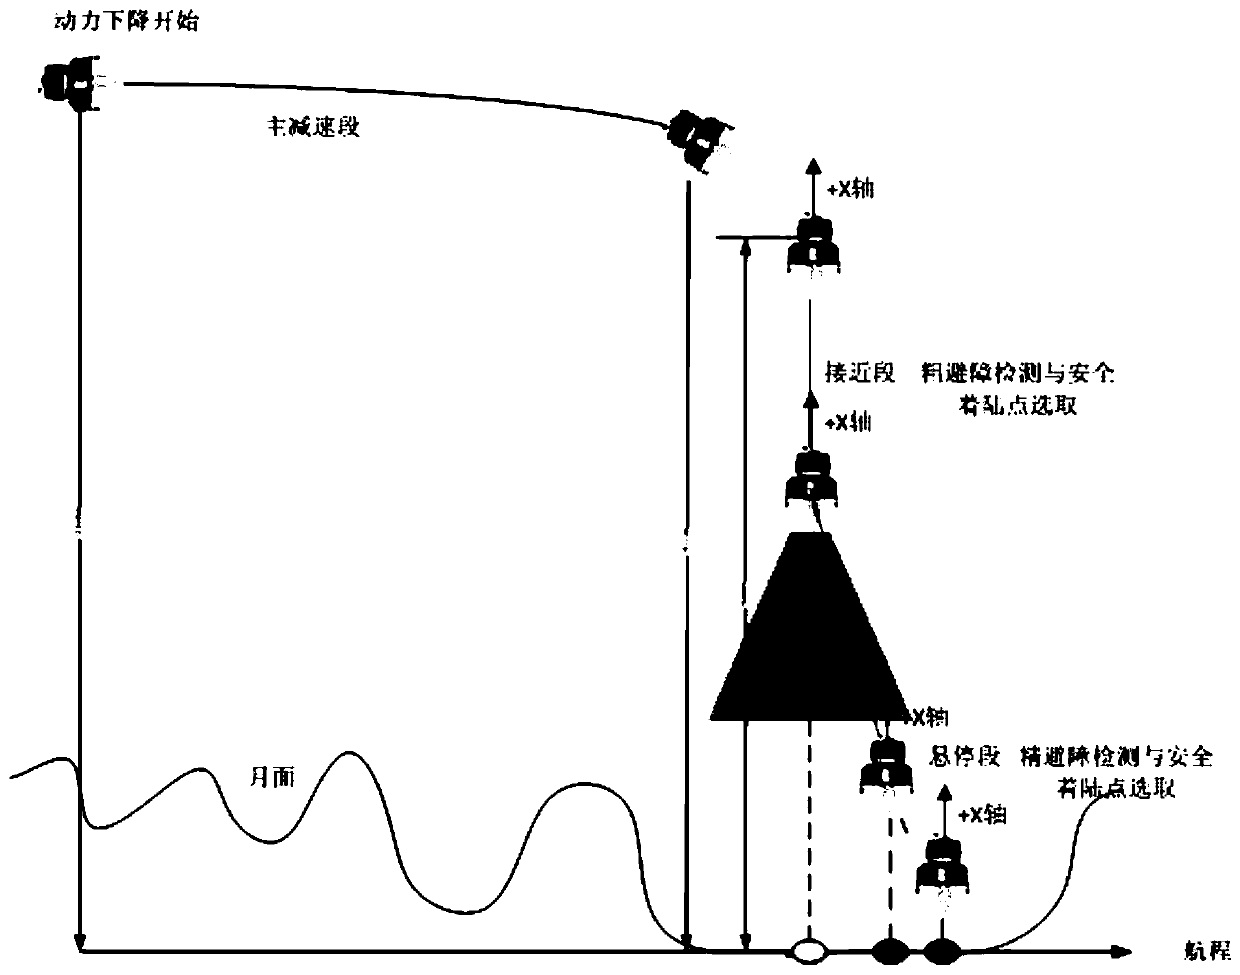 Precise obstacle avoidance heterogeneous backup method for lunar soft landing